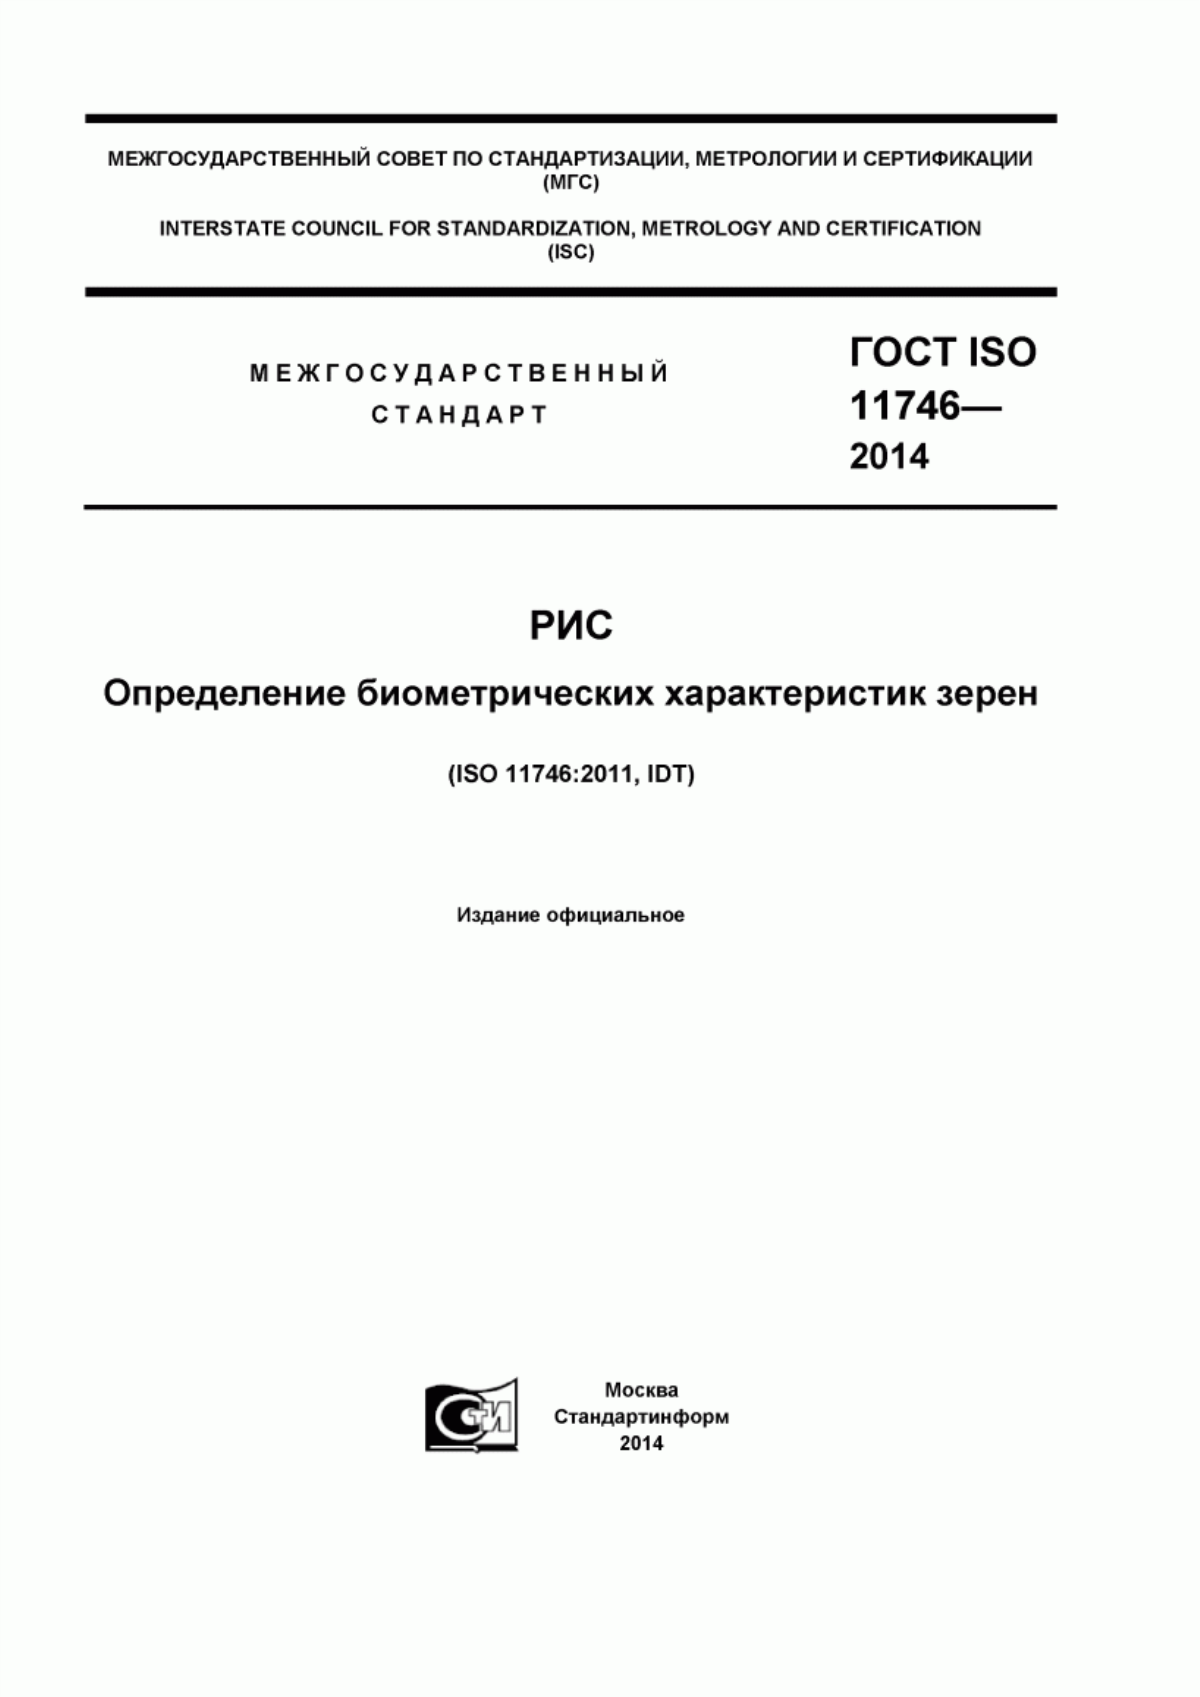 ГОСТ ISO 11746-2014 Рис. Определение биометрических характеристик зерен